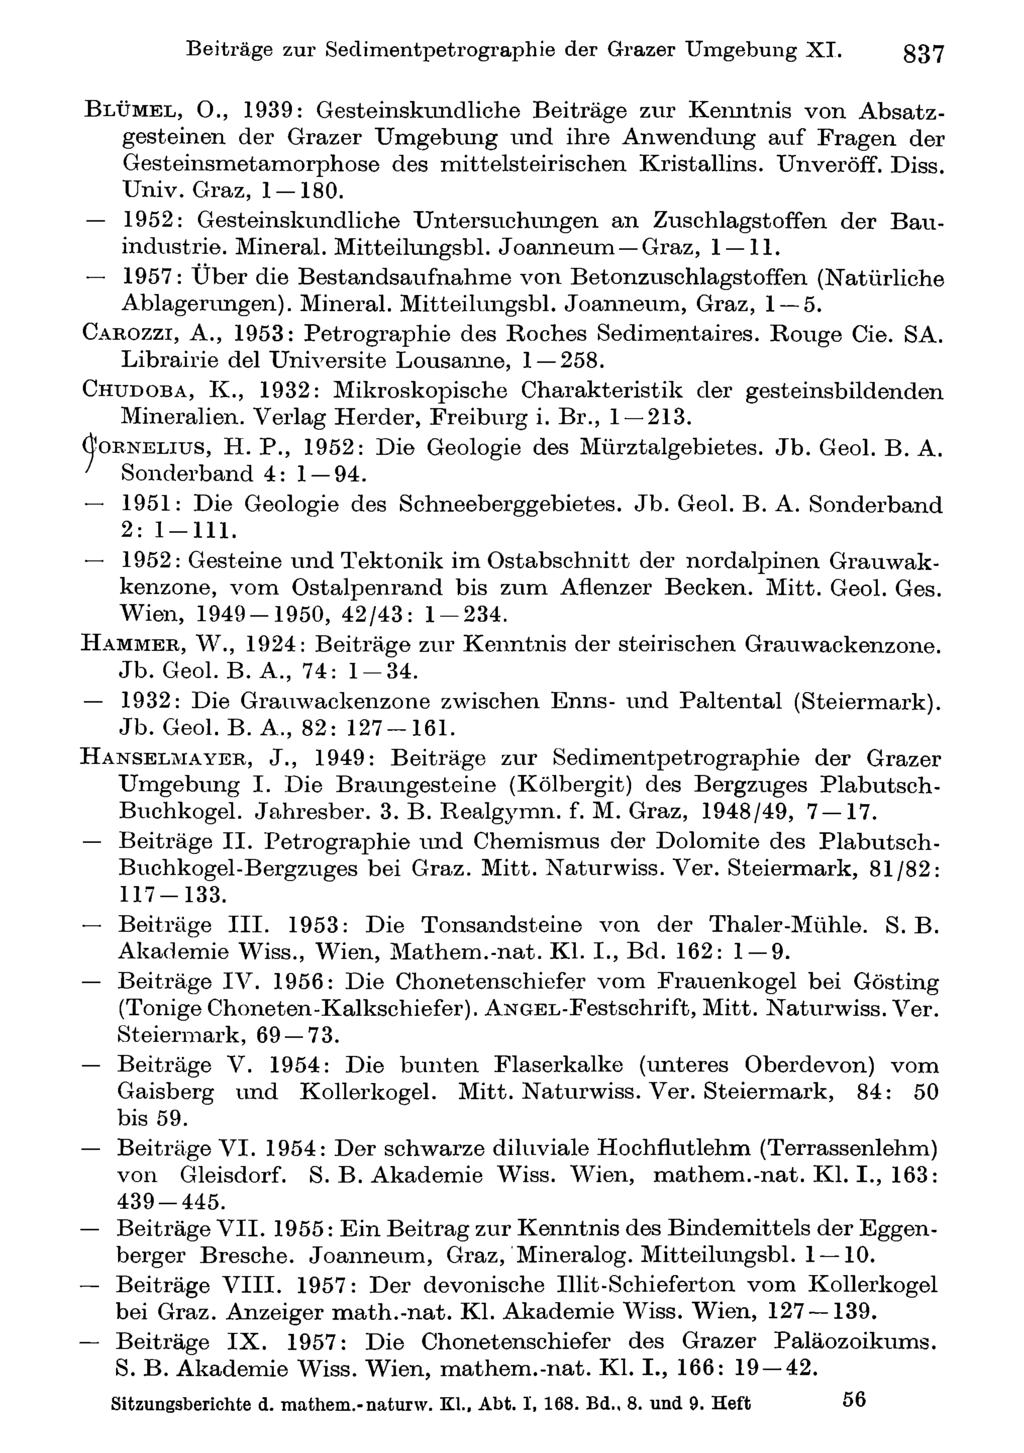 Beiträge Akademie zur Sedimentpetrographie d. Wissenschaften Wien; download der unter Grazer www.biologiezentrum.at Umgebung XI. 837 B l ü m e l, 0.